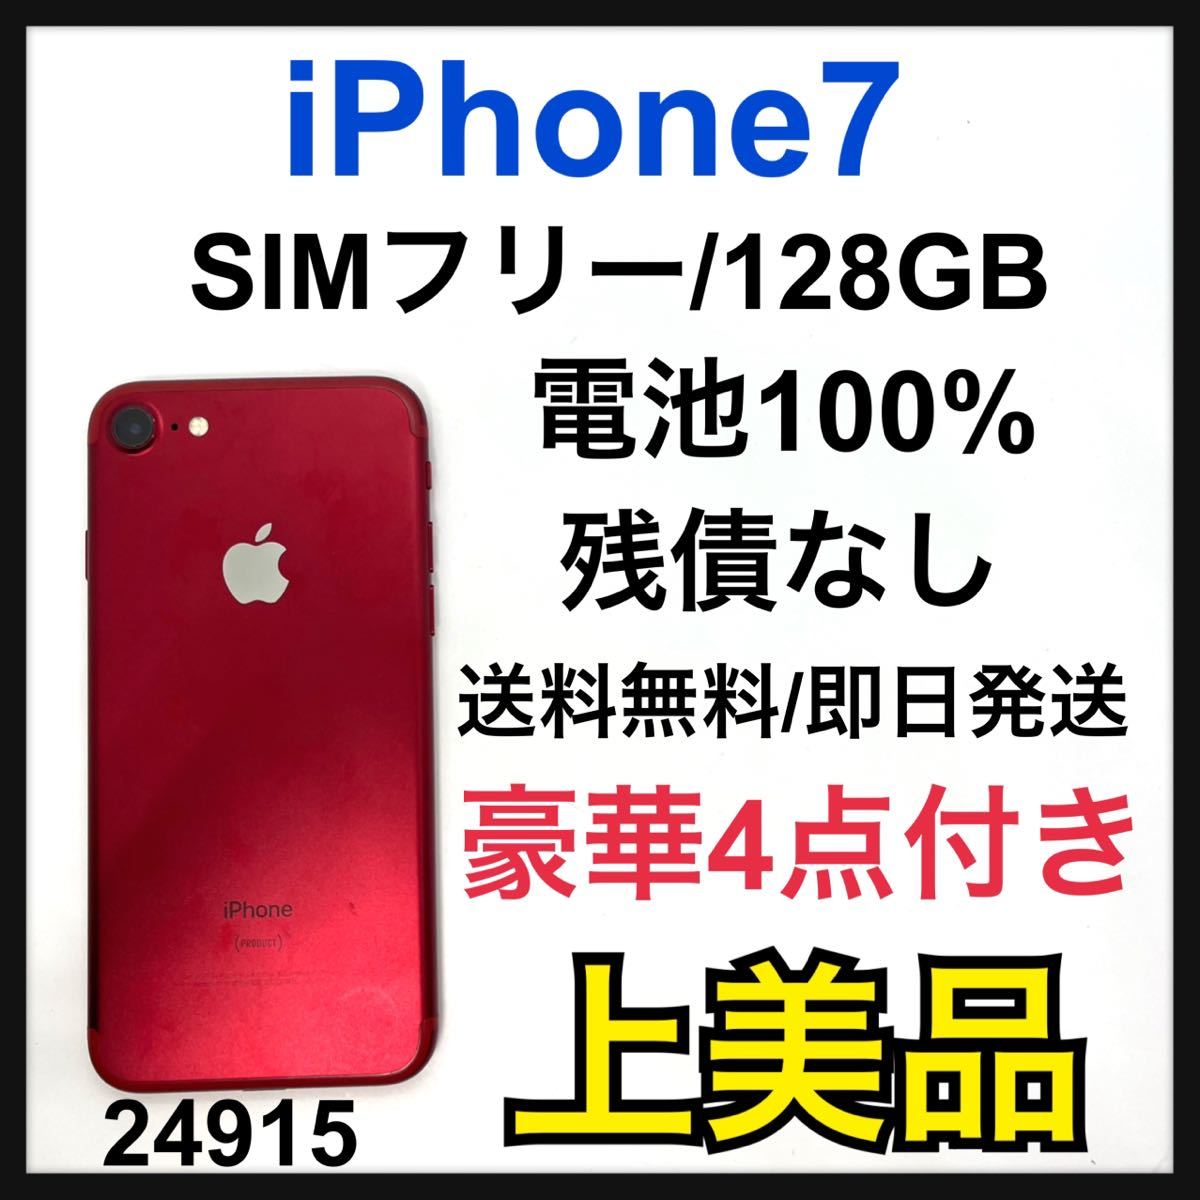 iPhone 7 Red 128 GB SIMフリー - 携帯電話